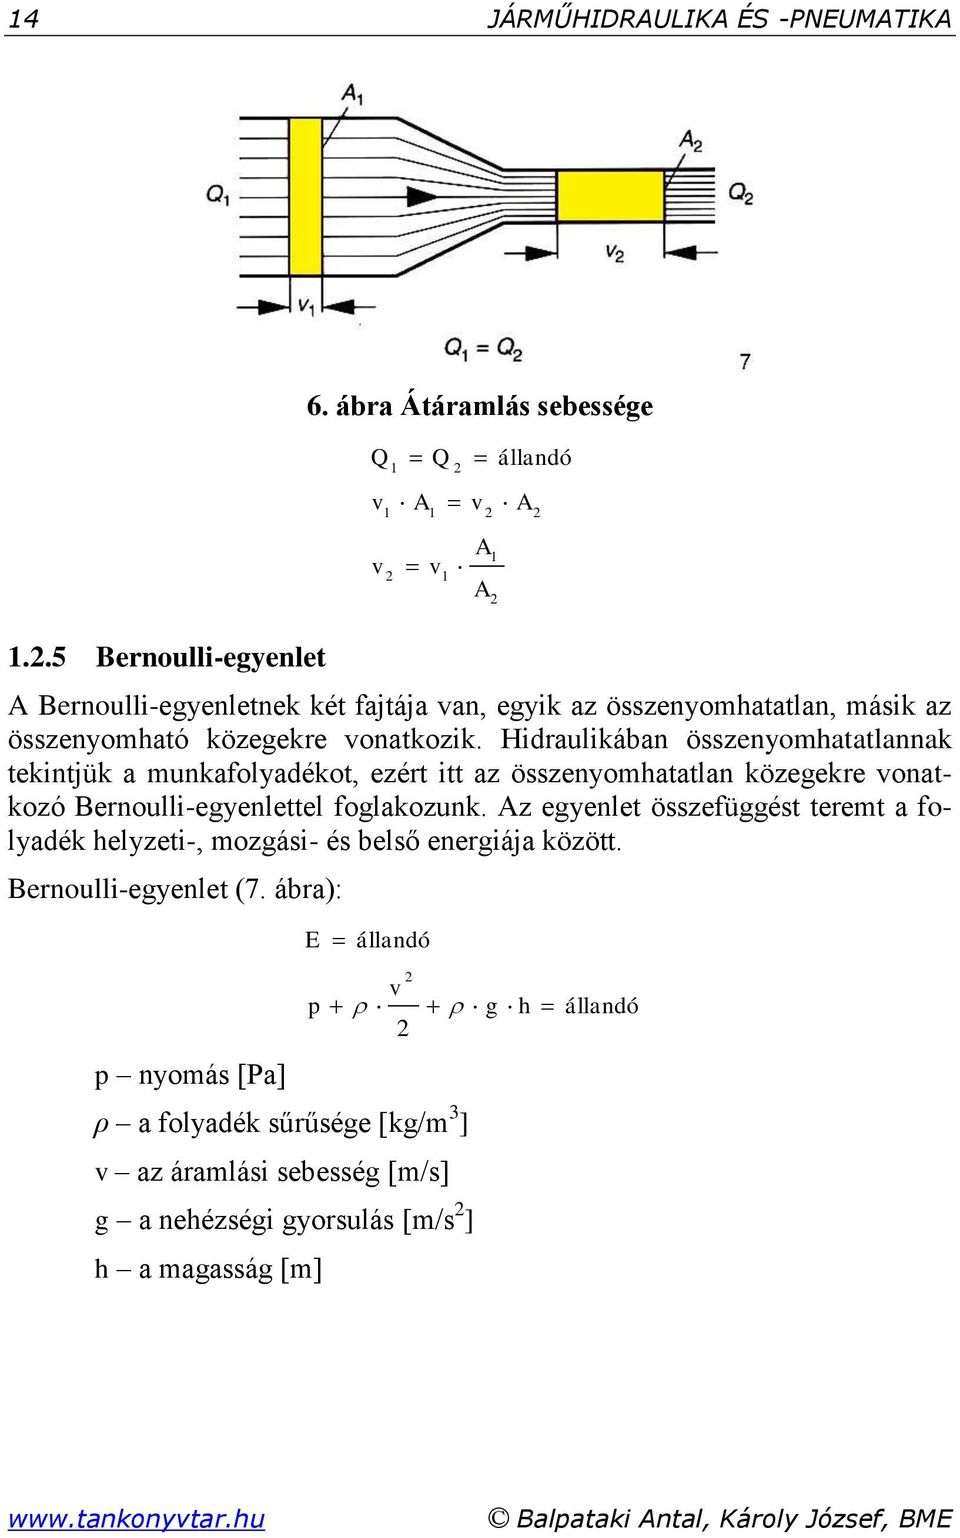 Hidraulikában összenyomhatatlannak tekintjük a munkafolyadékot, ezért itt az összenyomhatatlan közegekre vonatkozó Bernoulli-egyenlettel foglakozunk.